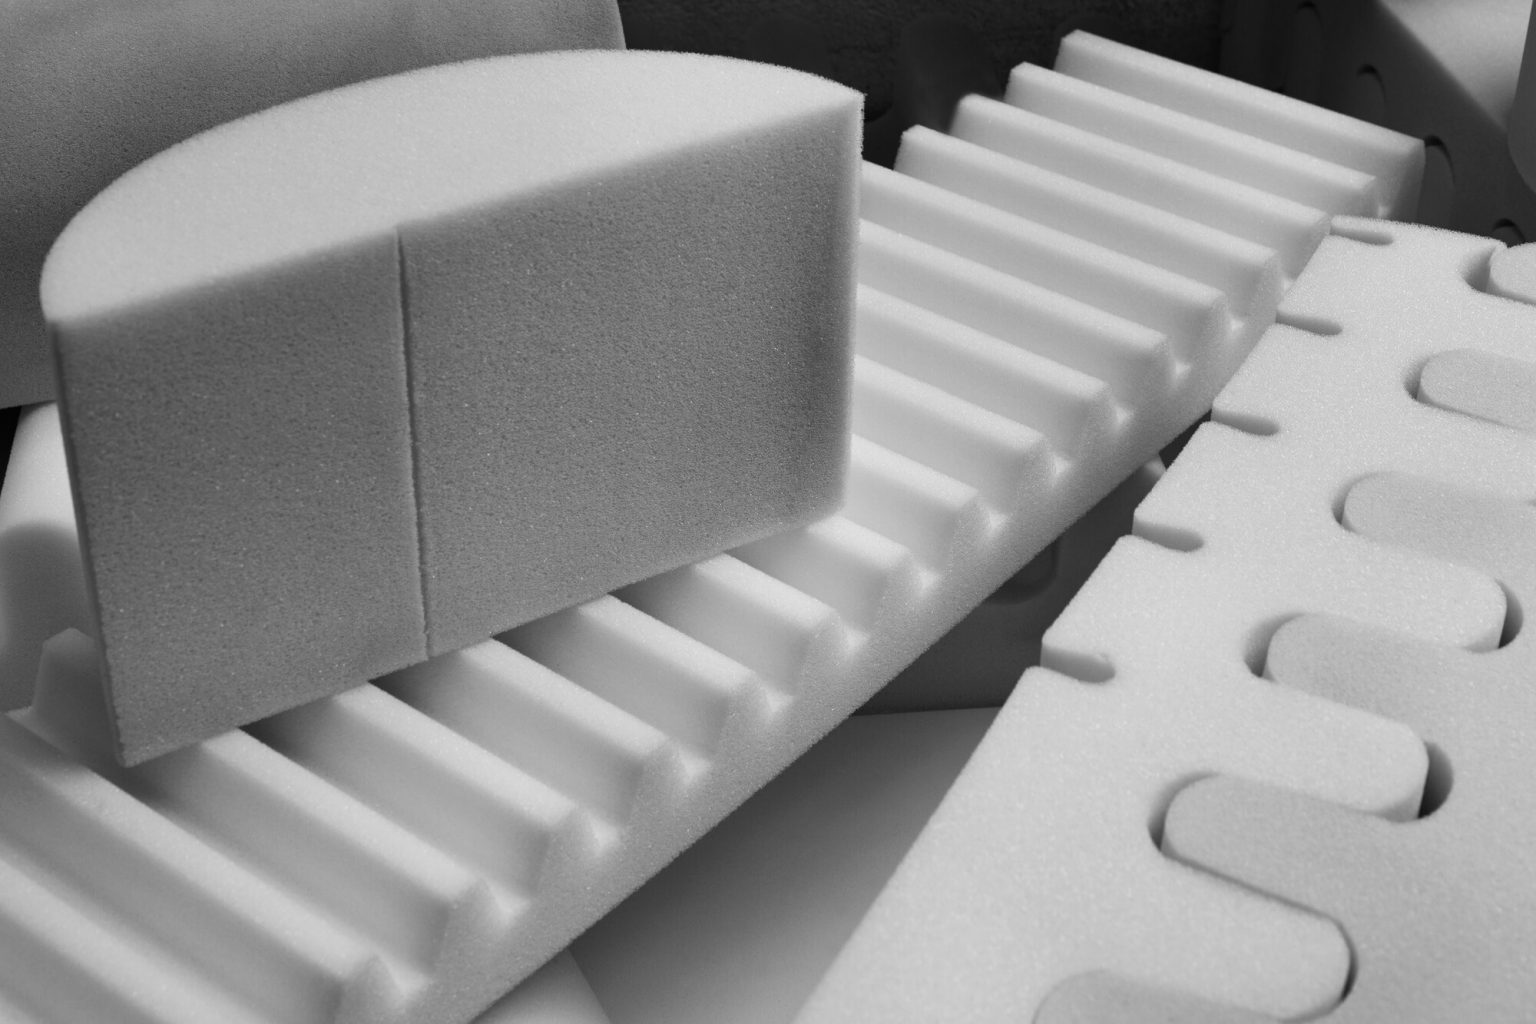 polyurethane foam mattress lifespan